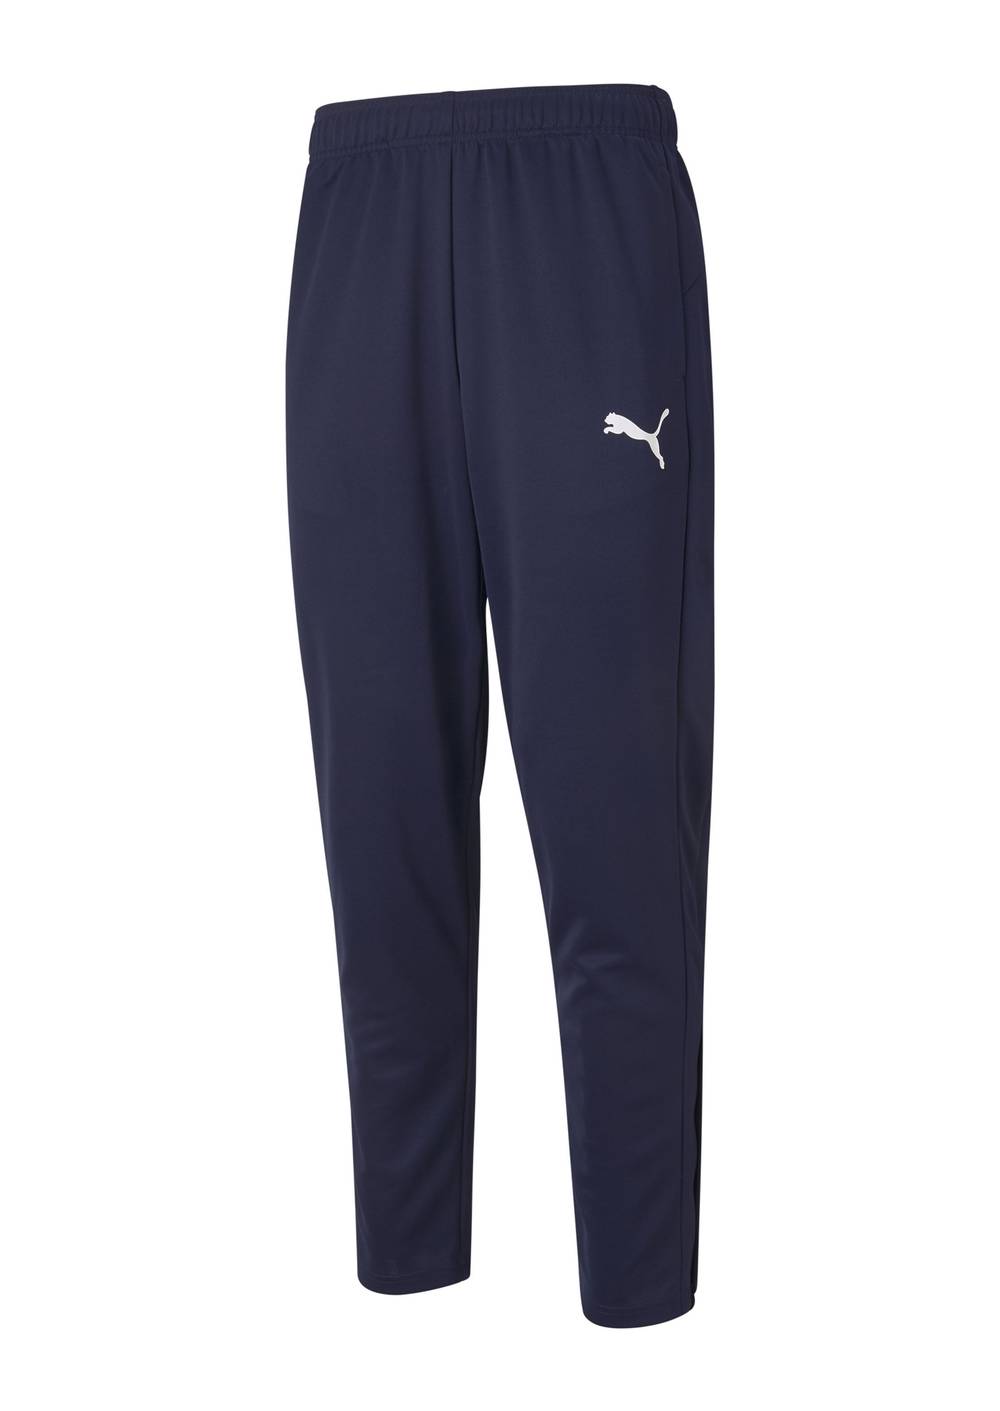 Puma pantalón active tricot pants cl azulmarino hombre (color: azul marino. talla: s)